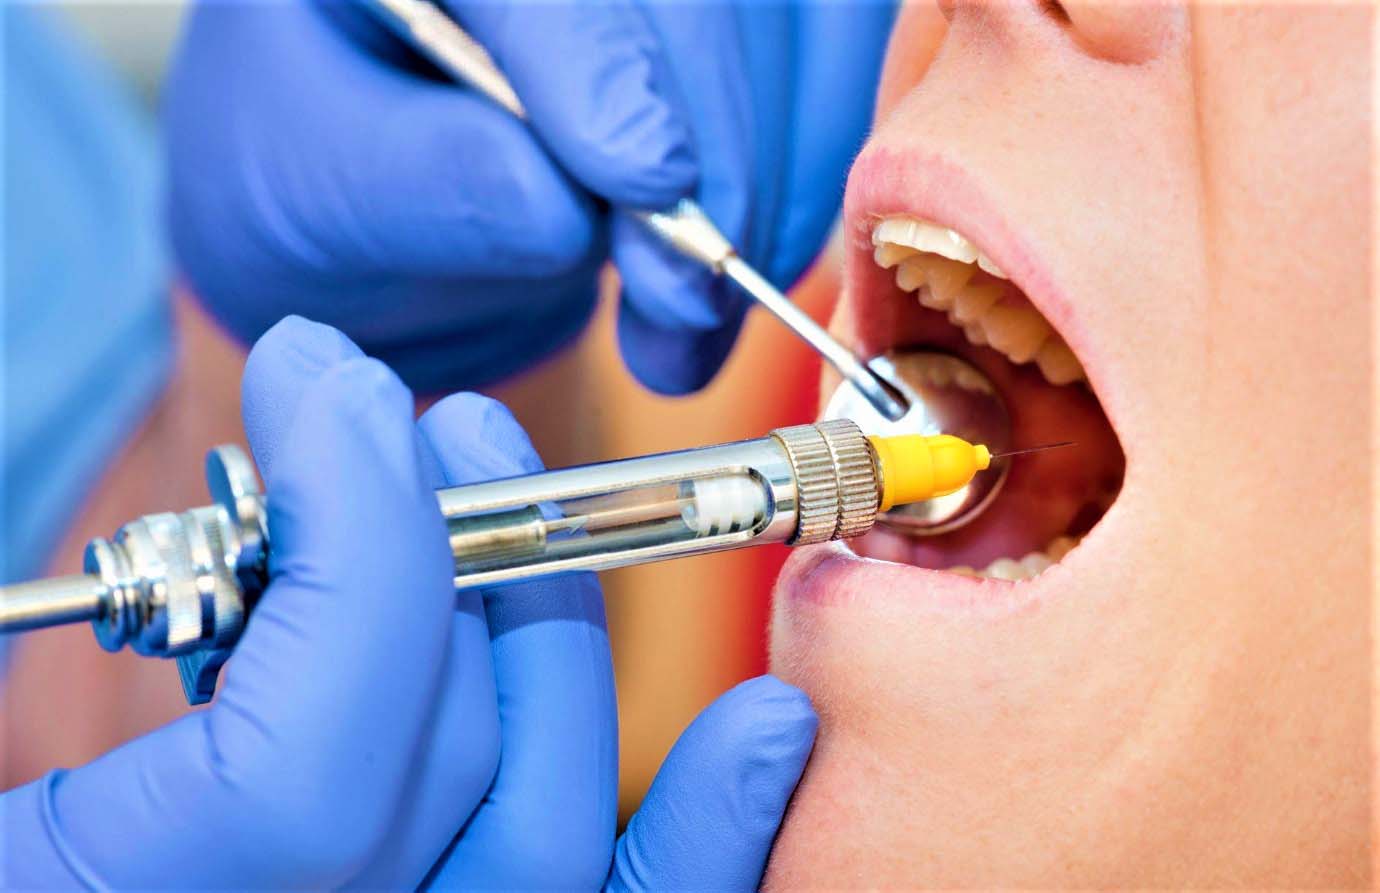 Инфильтрационная анестезия зуба